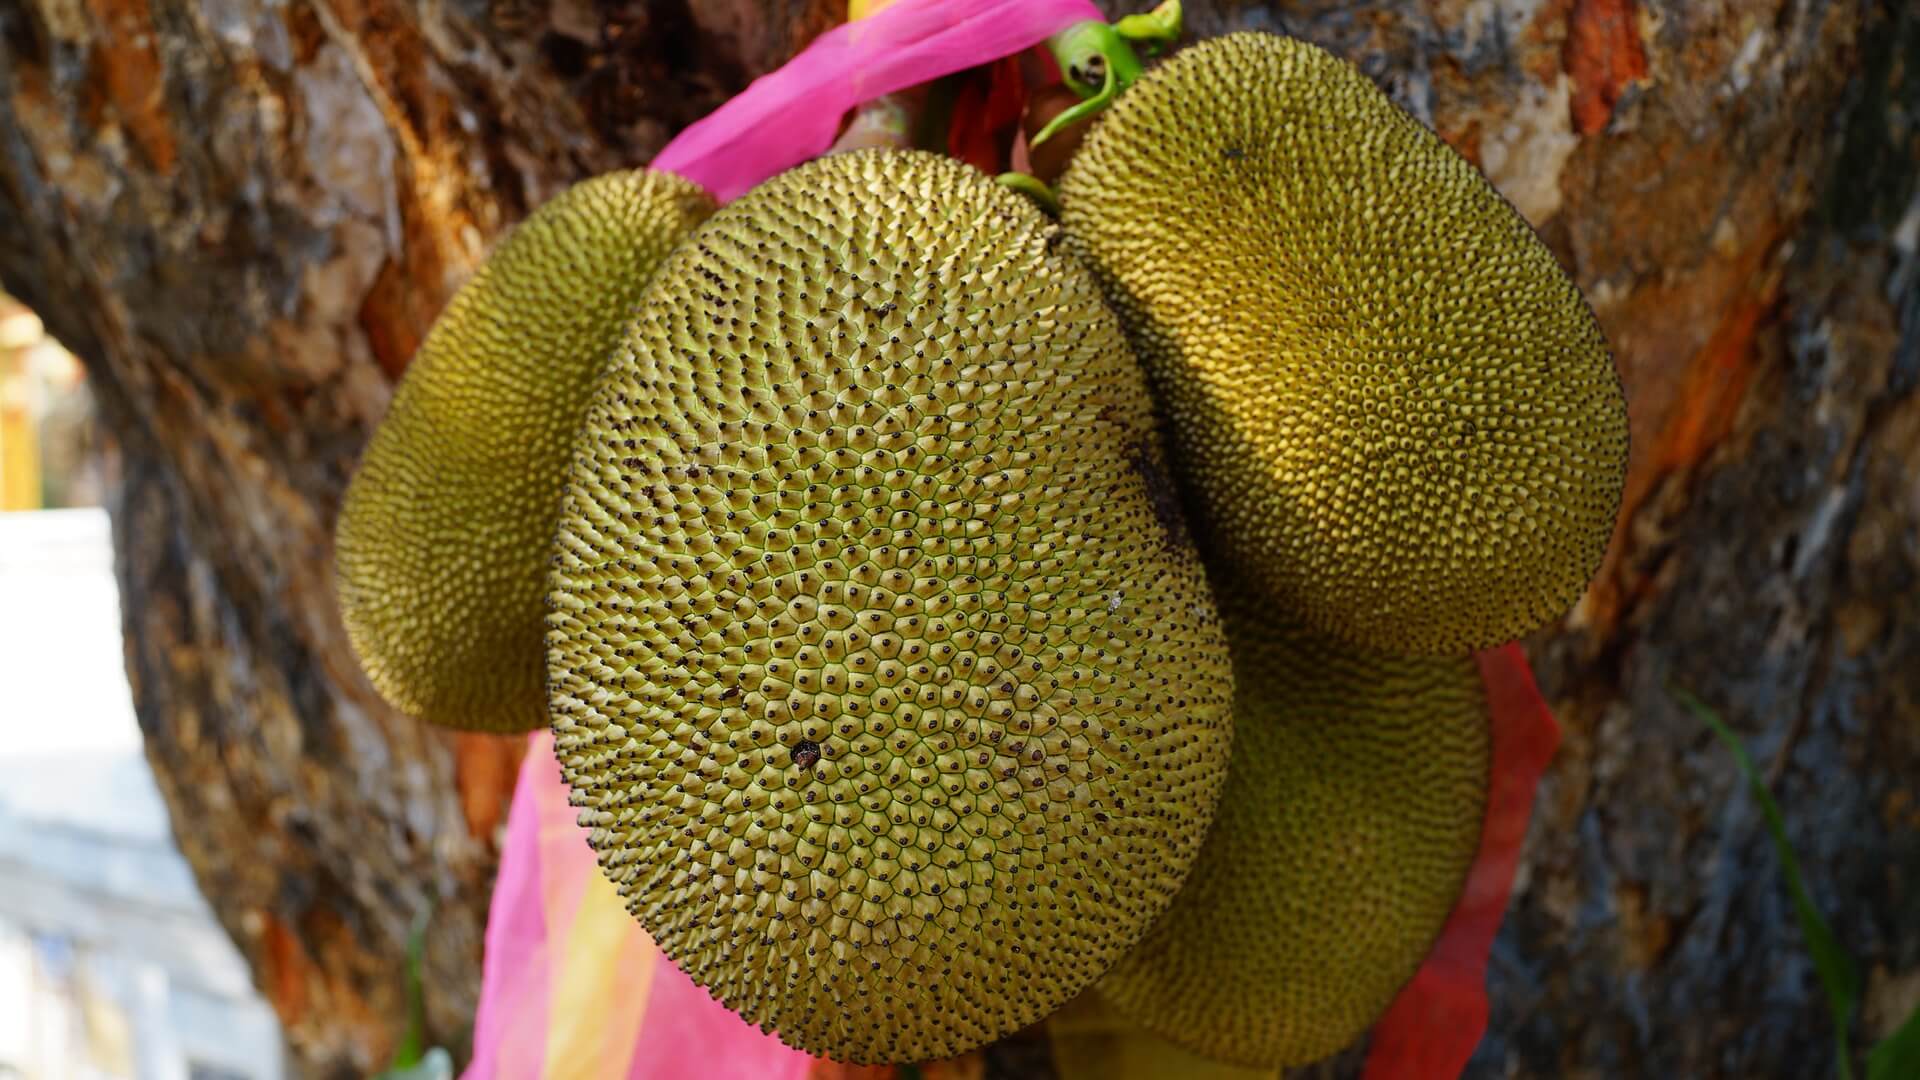 Jackfruit is een veelzijdig stuk fruit